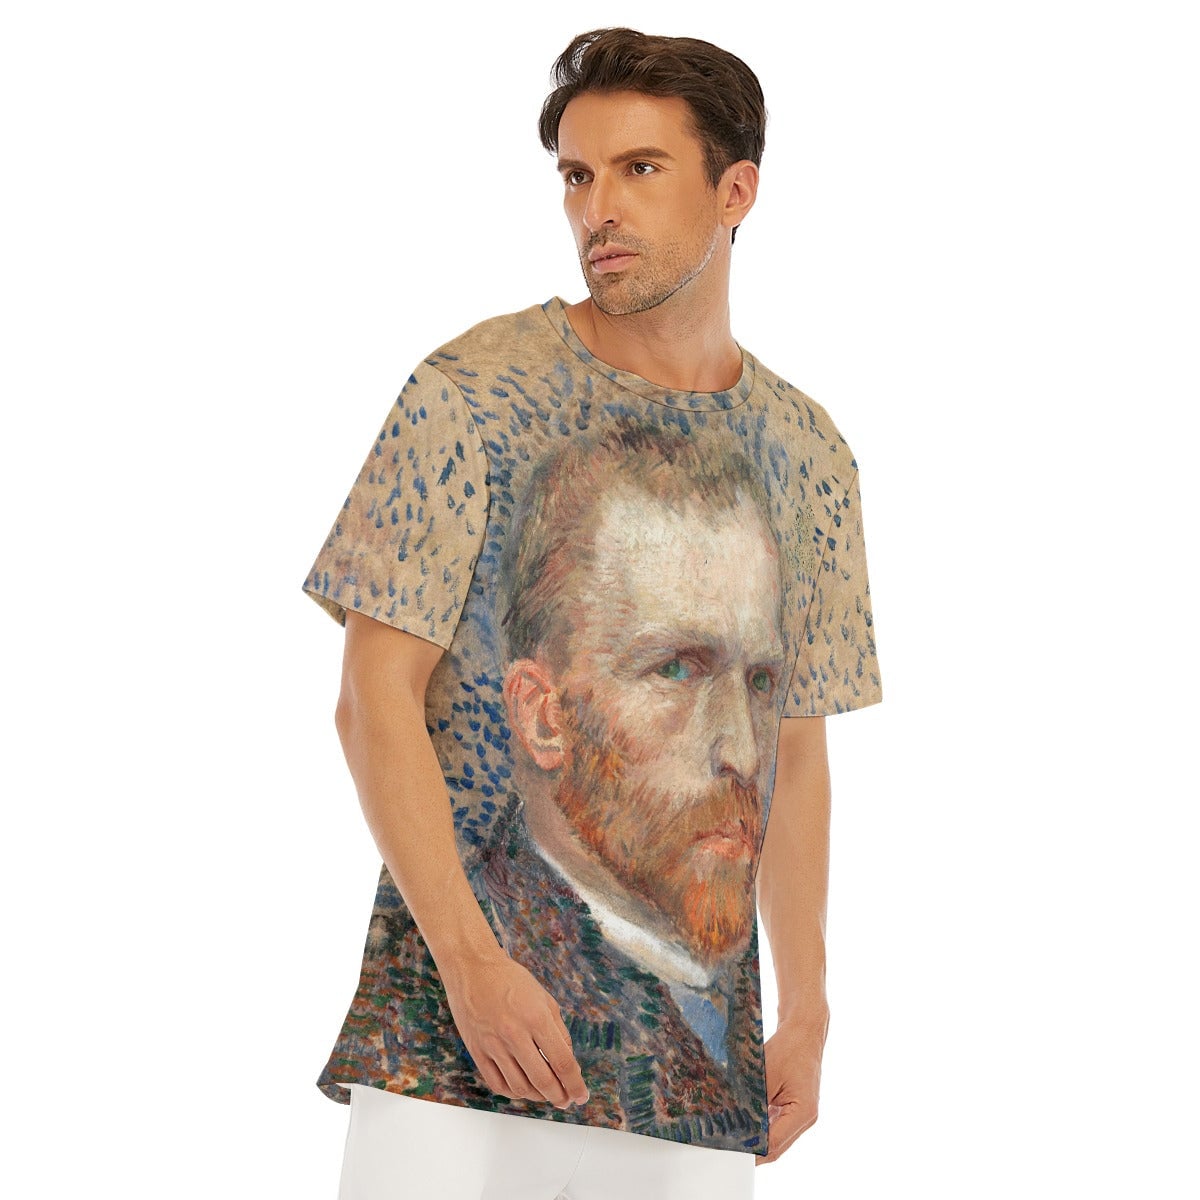 Self-Portrait 1887 Vincent van Gogh T-Shirt